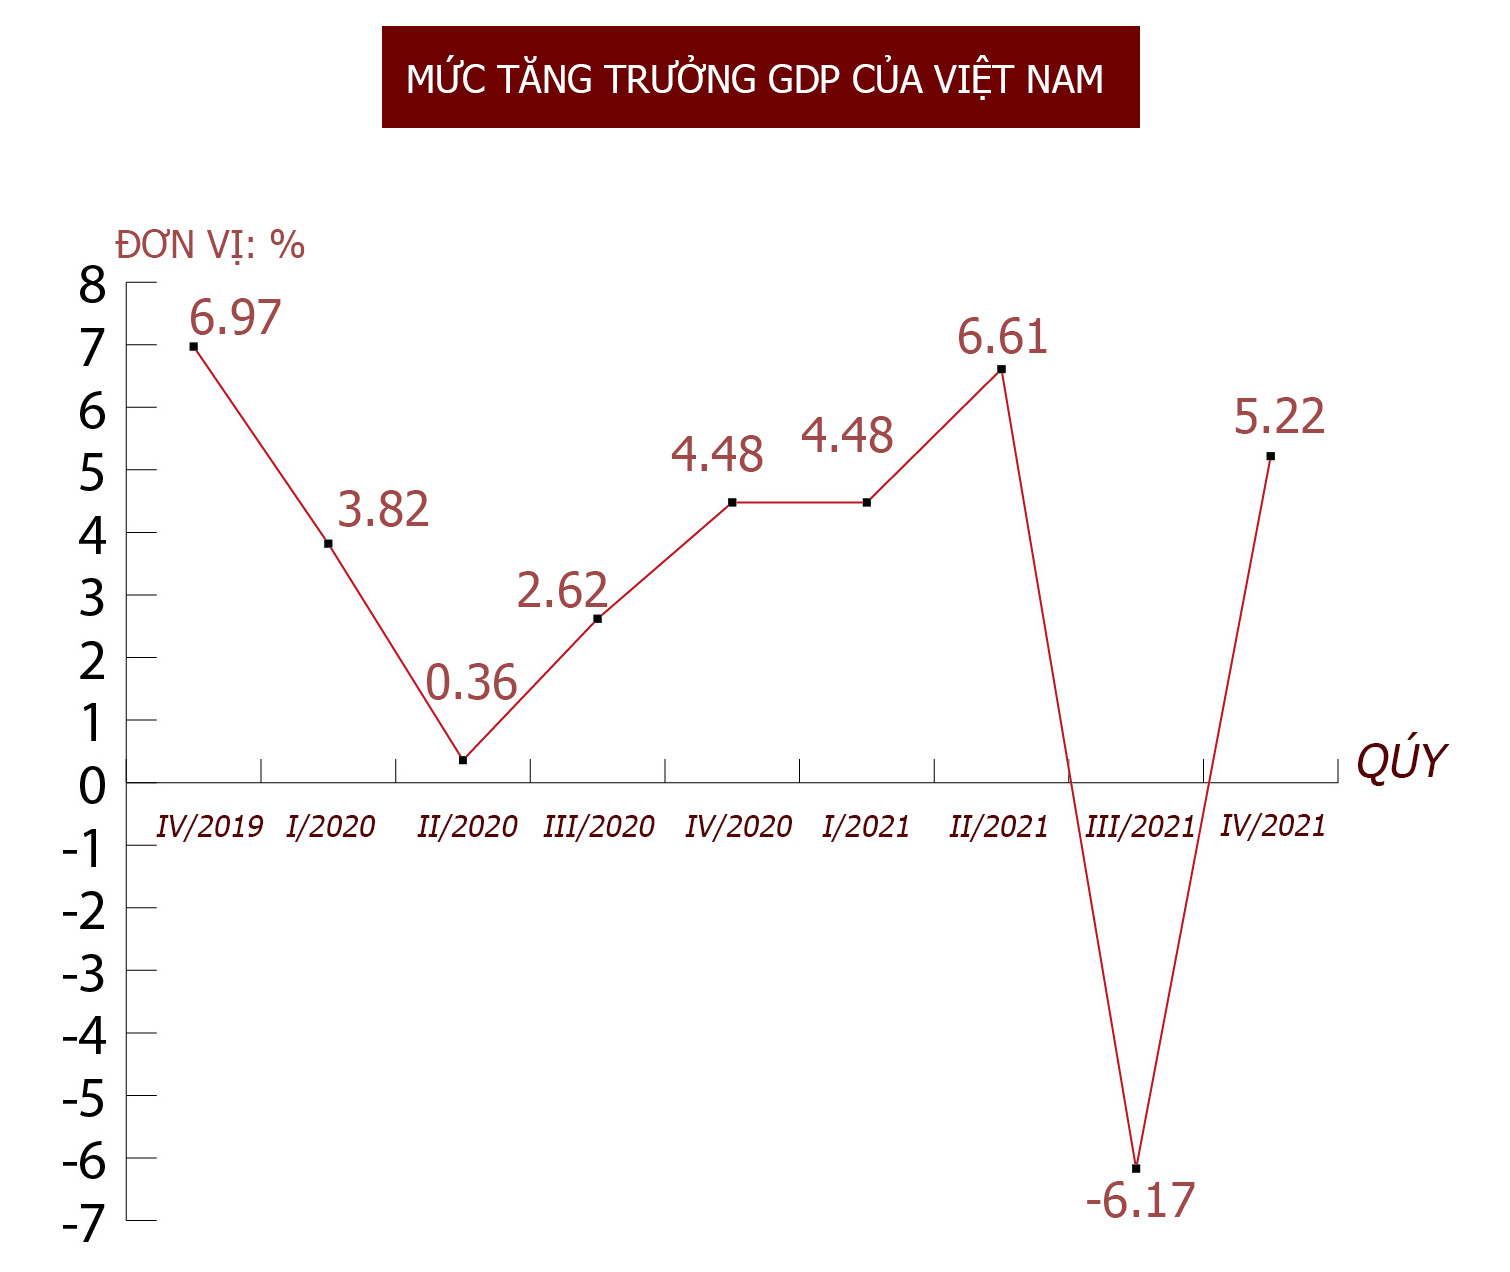 Một năm với Covid-19, Covid-19 và Covid-19, kinh tế Việt Nam đương đầu ra sao? - 6